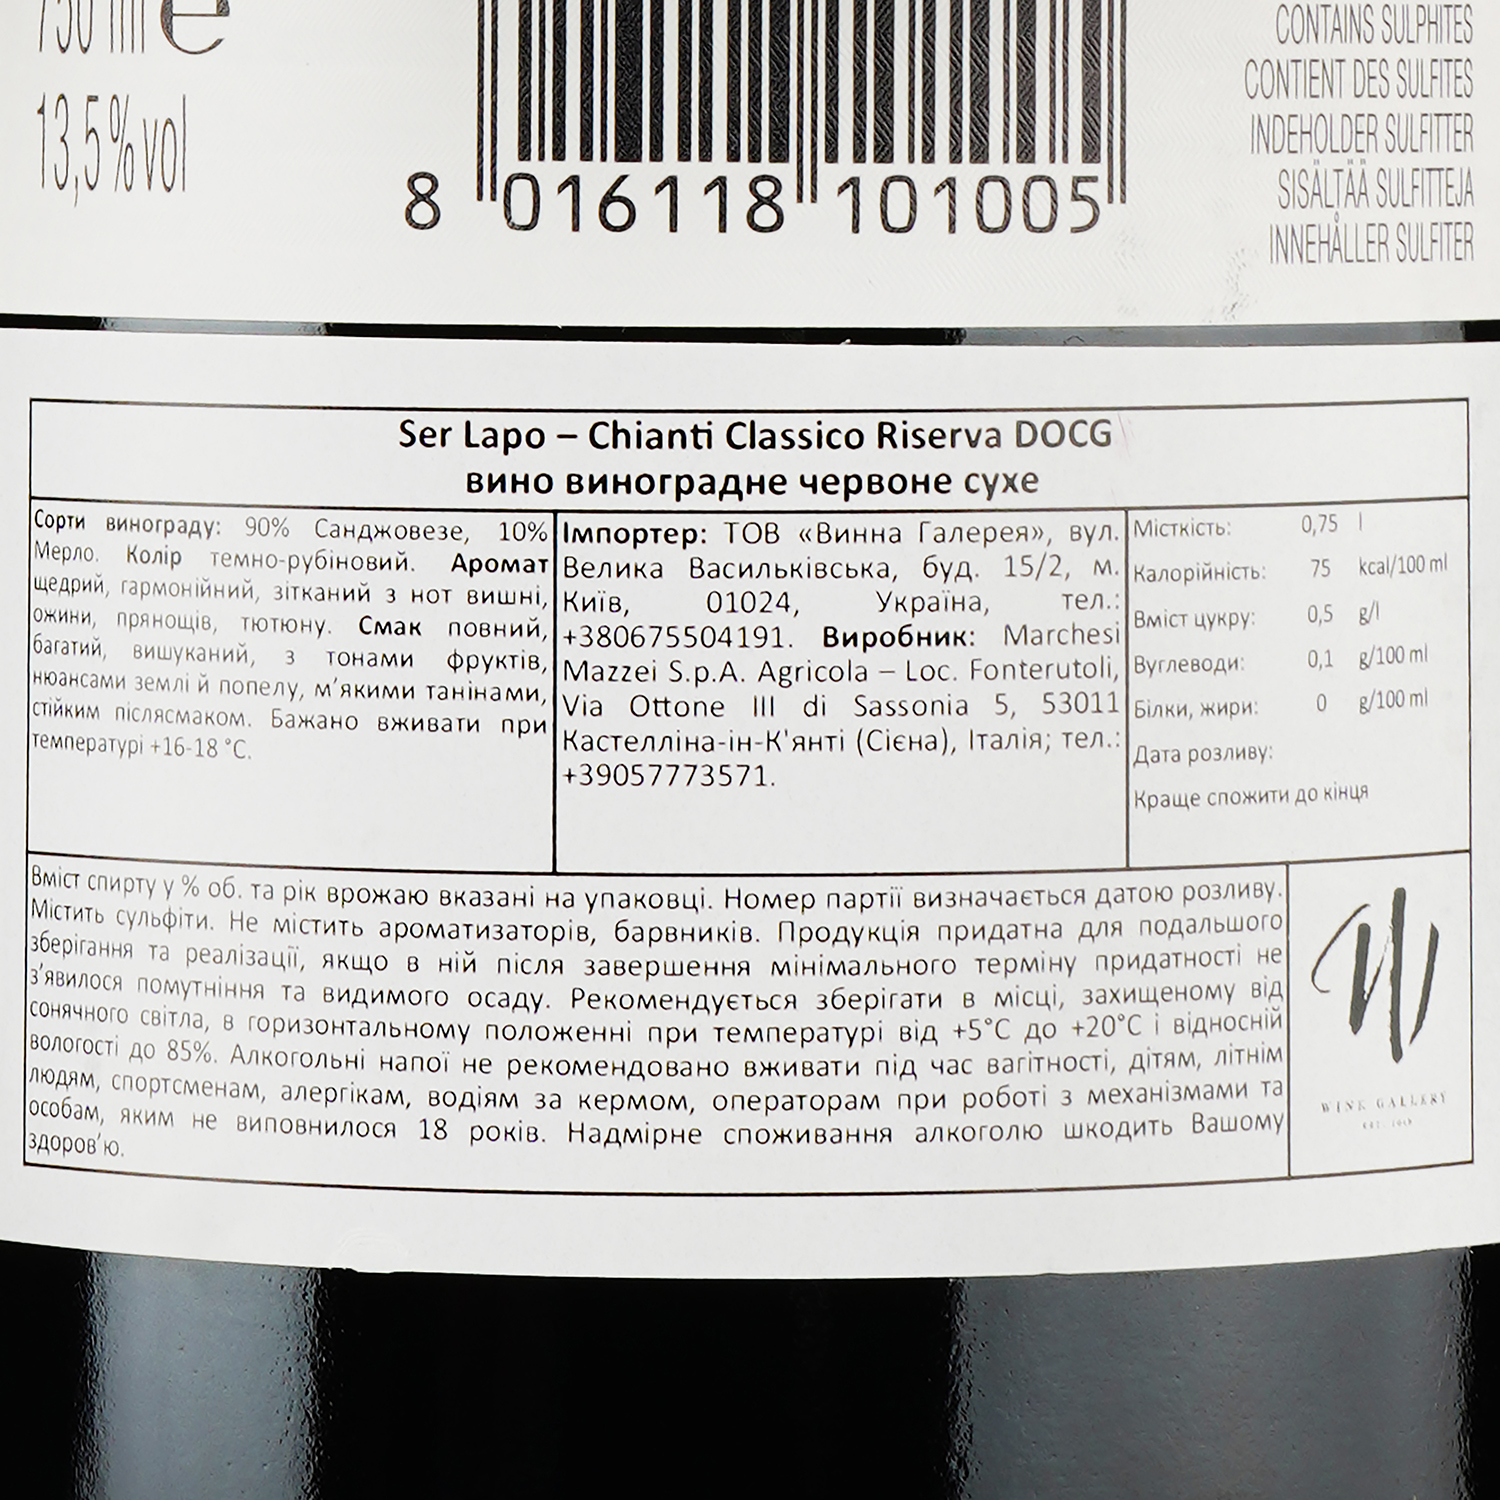 Вино Marchesi Mazzei S.p.A. Ser Lapo – Chianti Classico Riserva DOCG, червоне, сухе, 0,75 л - фото 3